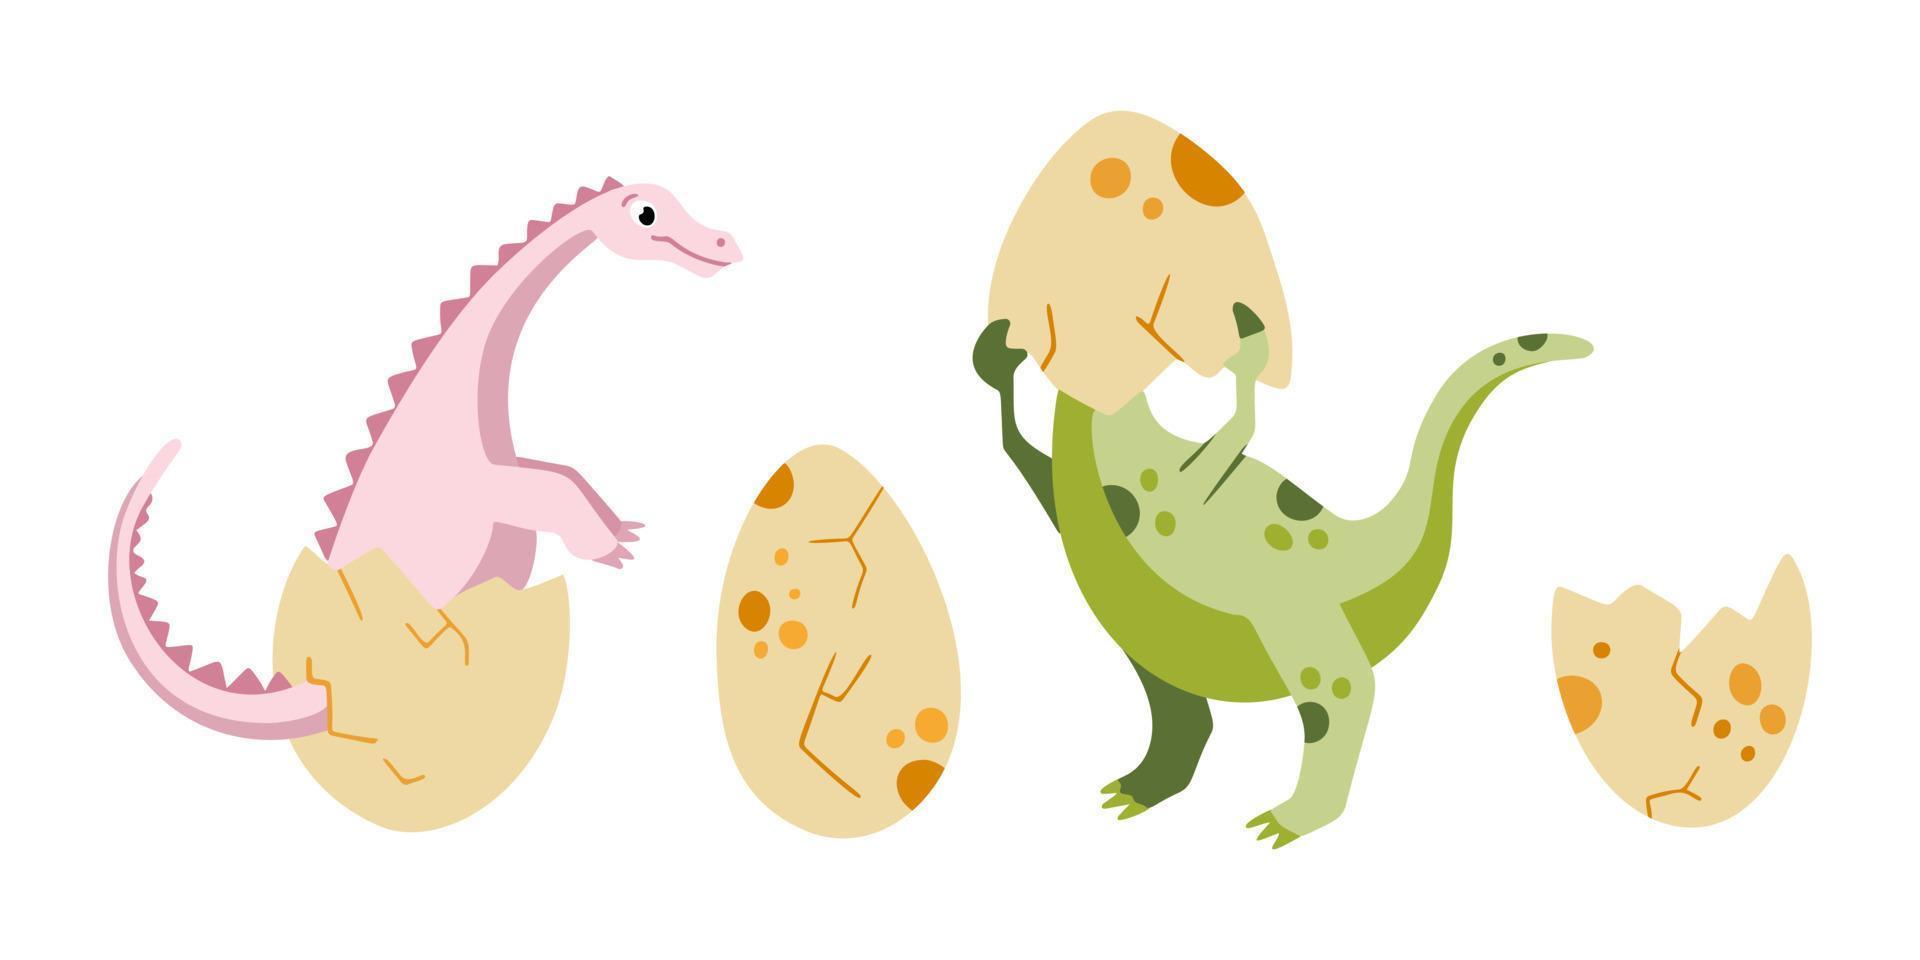 ein süßer dinosaurier, der aus eiern schlüpft. Dinosaurier-Eier-Vektor-Illustration. neugeborenes niedliches dinosaurier-set vektor